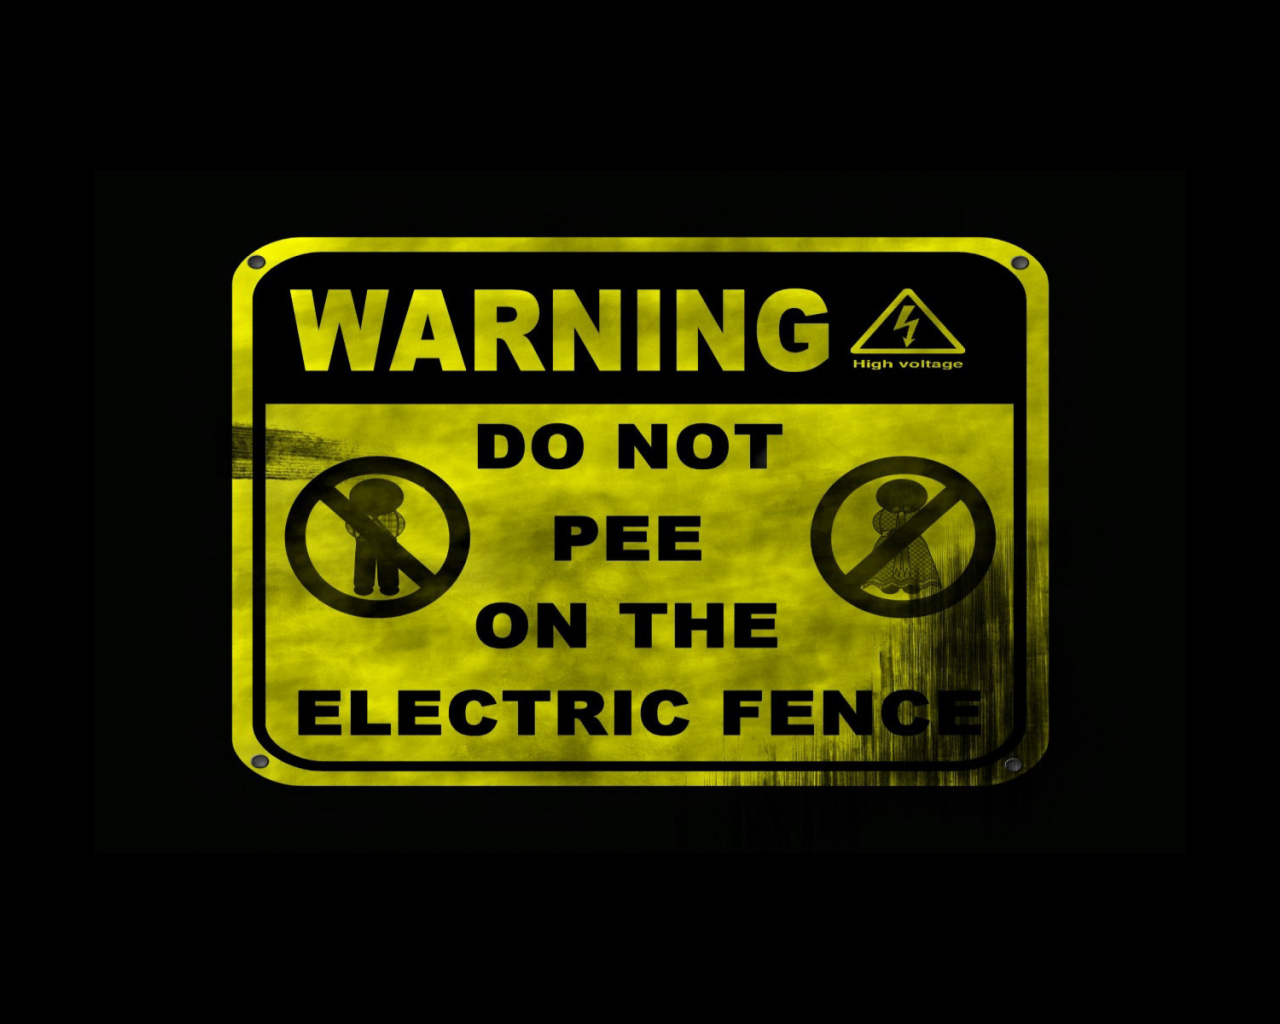 fence, do not pee, warning, high voltage, высокое напряжение, щит, опасно, electric